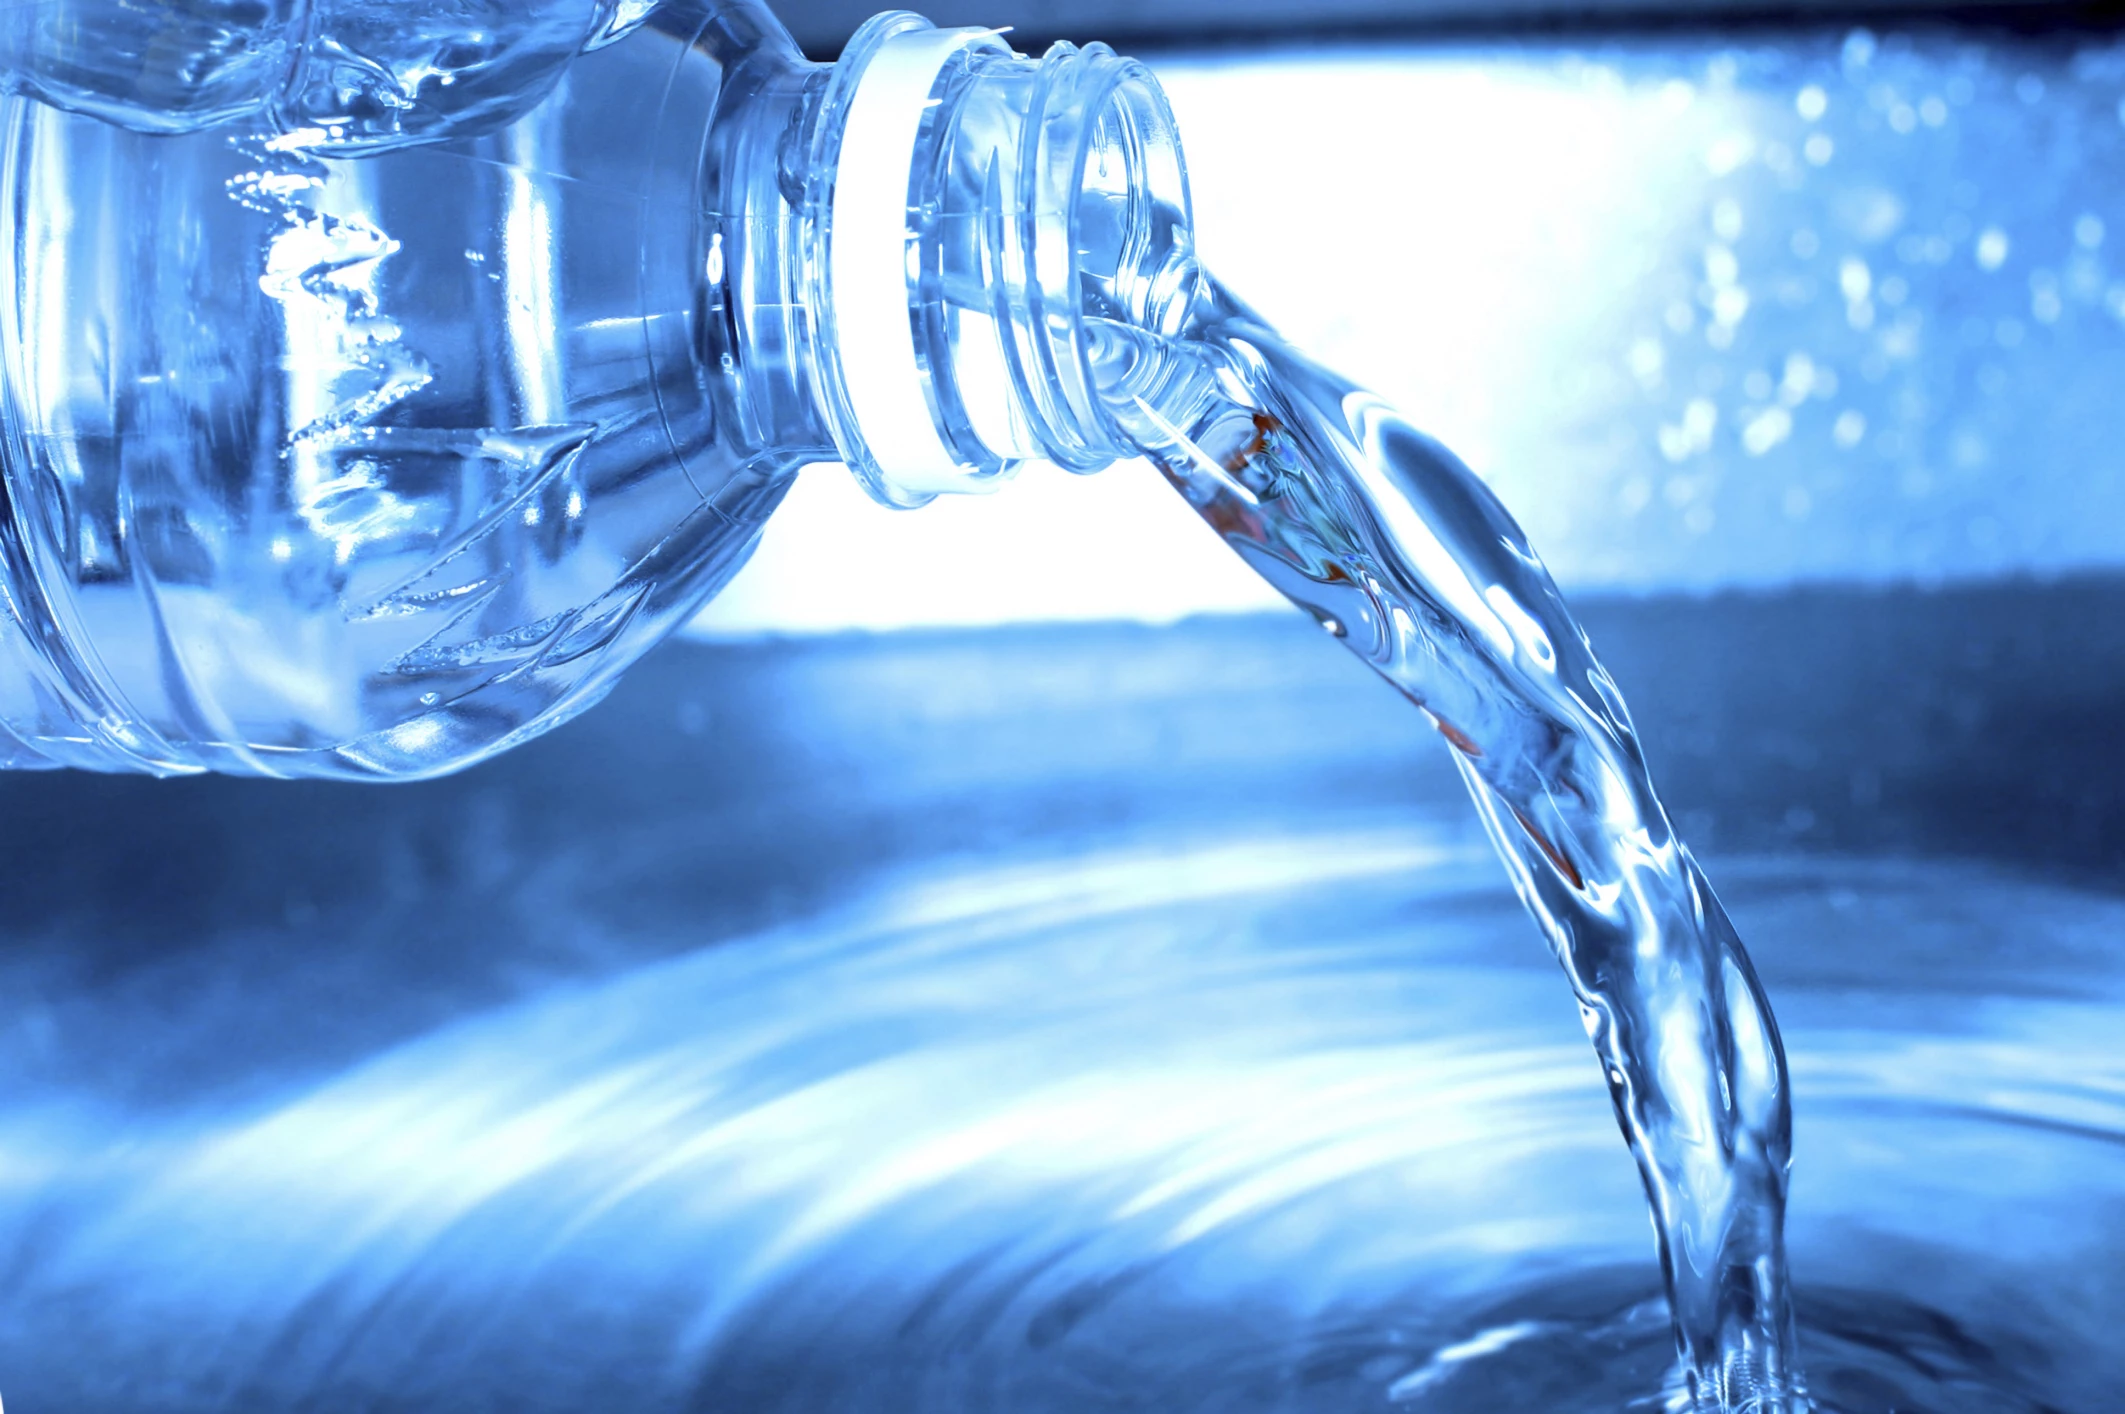 Door-to-door Effort Underway In Flint Water Crisis